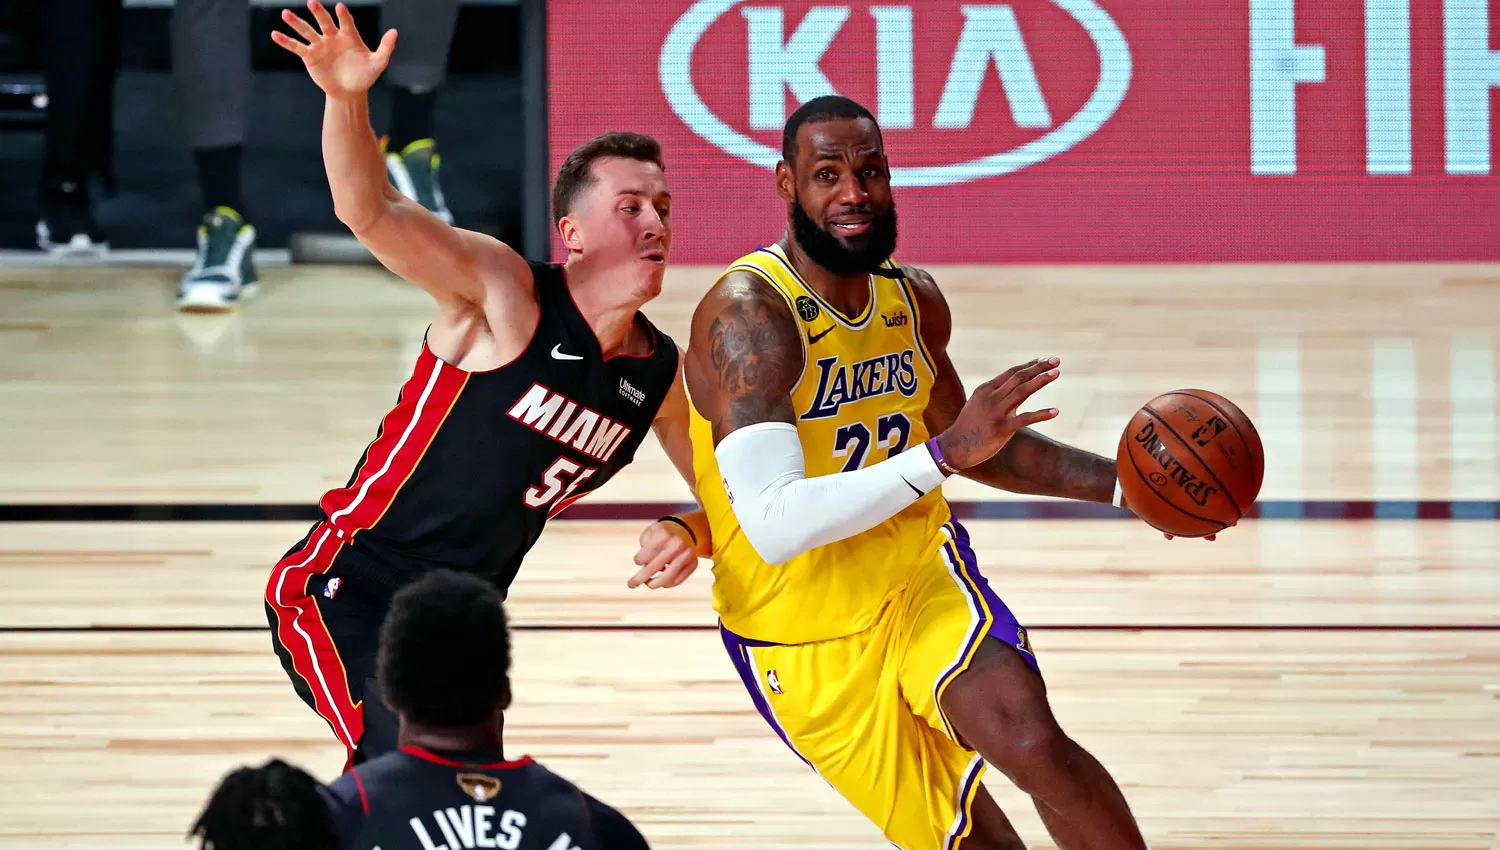 CANDIDATOS. Liderados por LeBron James, Los Angeles Lakers intentarán recuperar la corona perdida el año pasado.